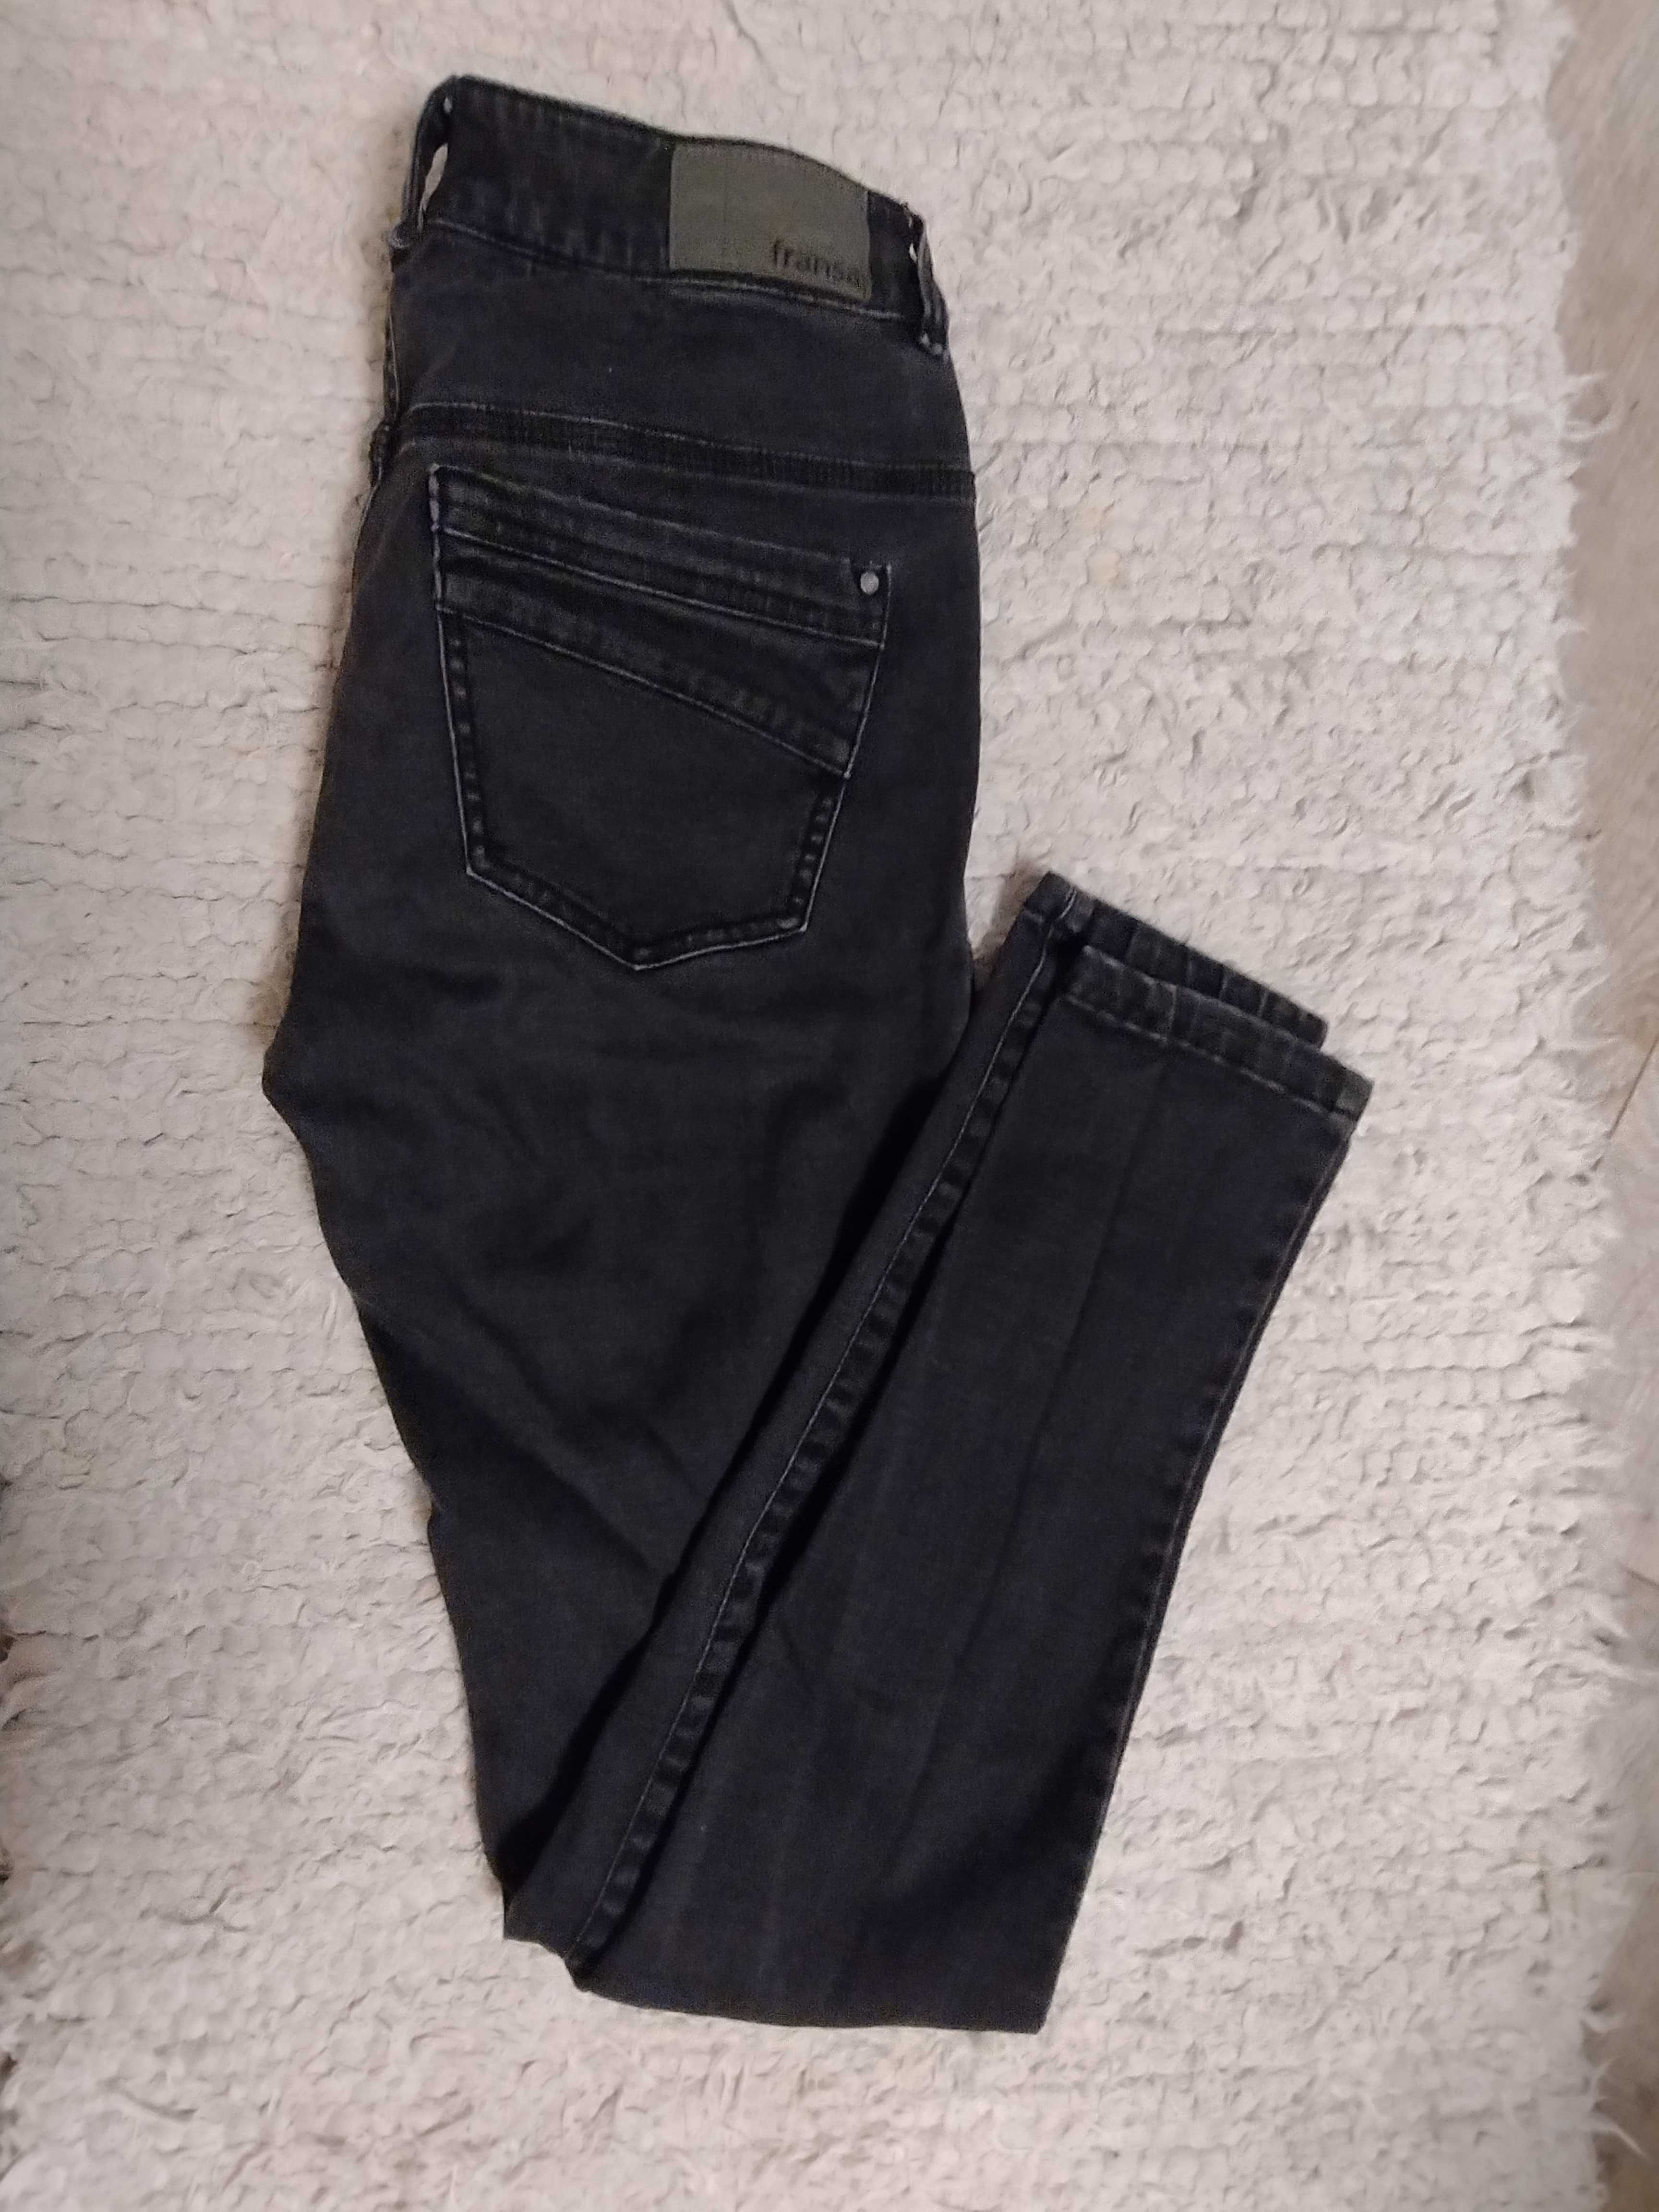 Spodnie jeans czarne rozmiar 38